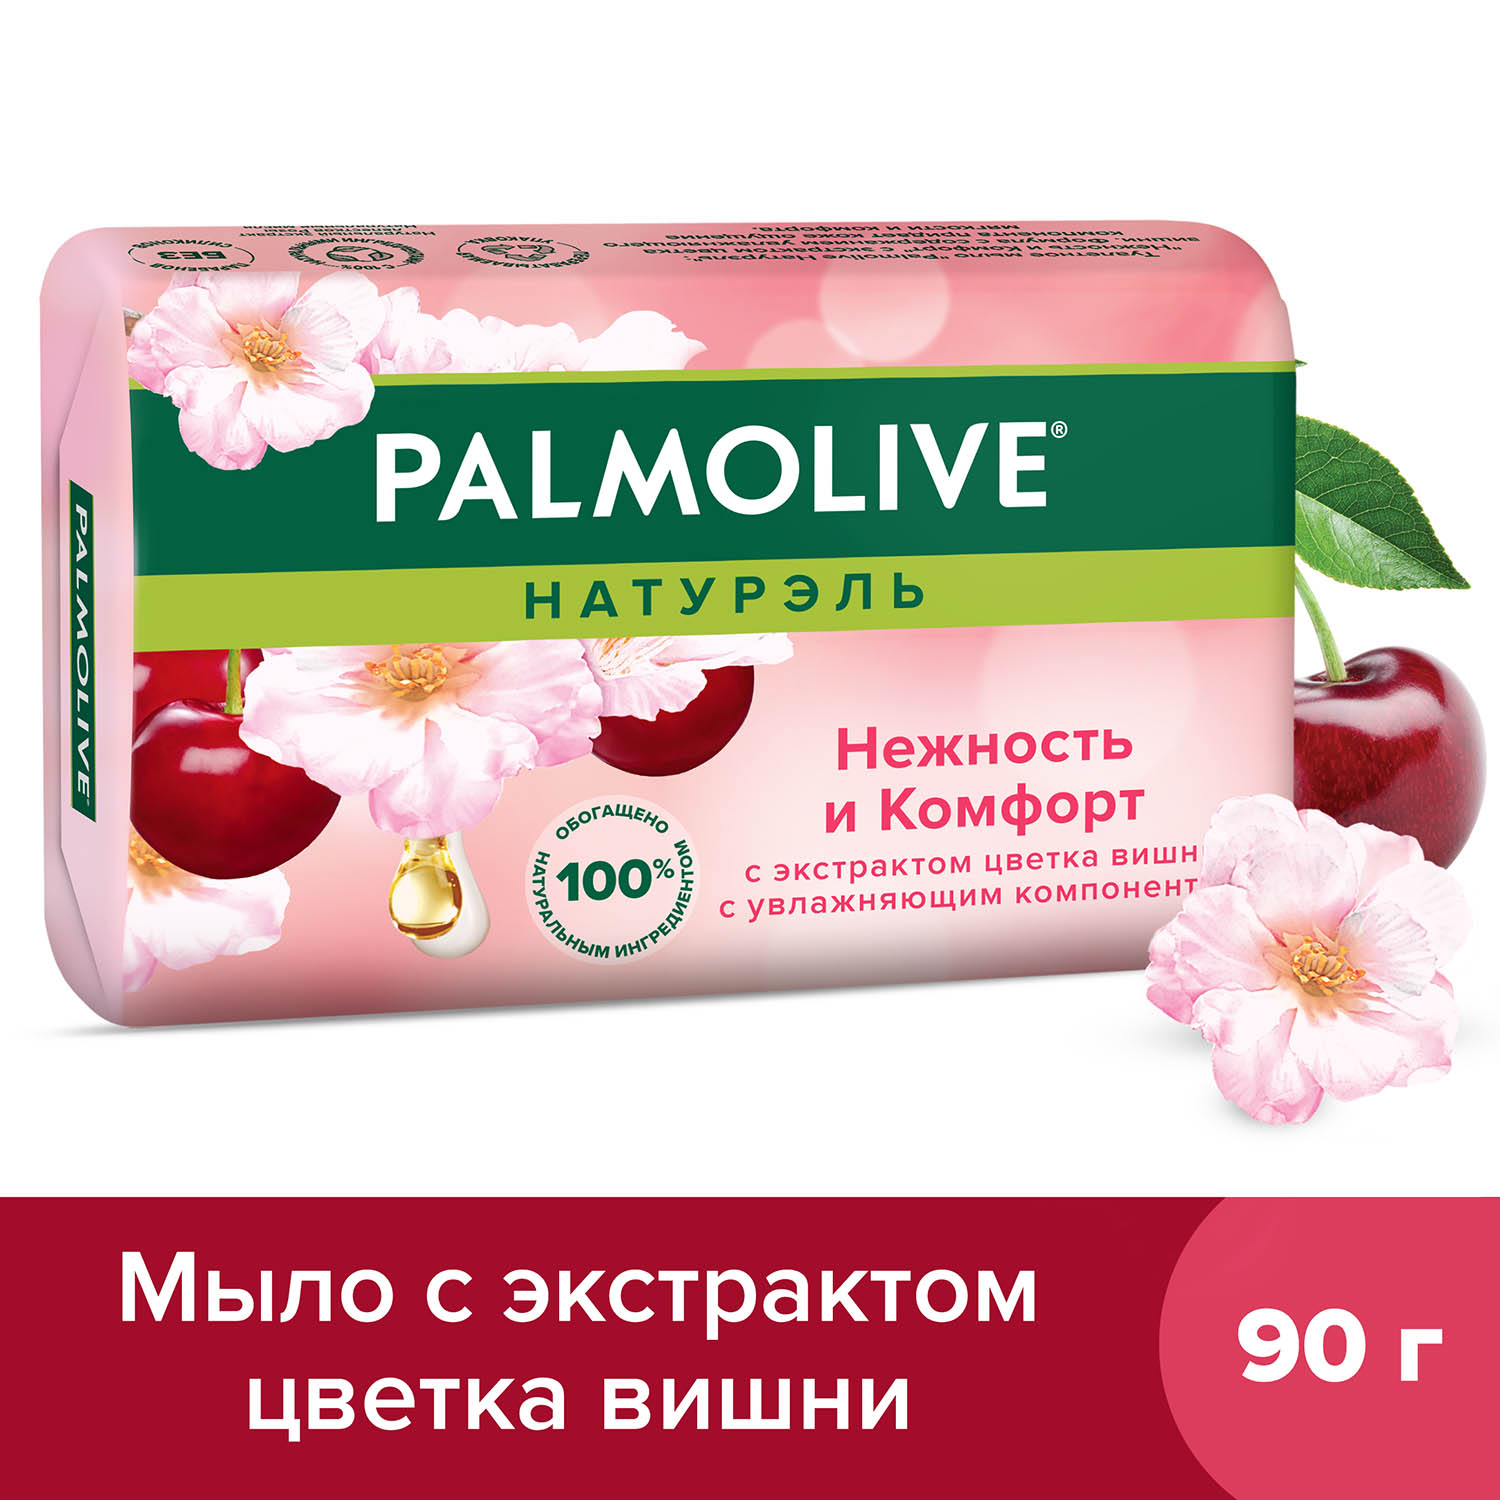 цена Мыло туалетное твердое Palmolive Натурэль Нежность и Комфорт с экстрактом цветка вишни, 90 г